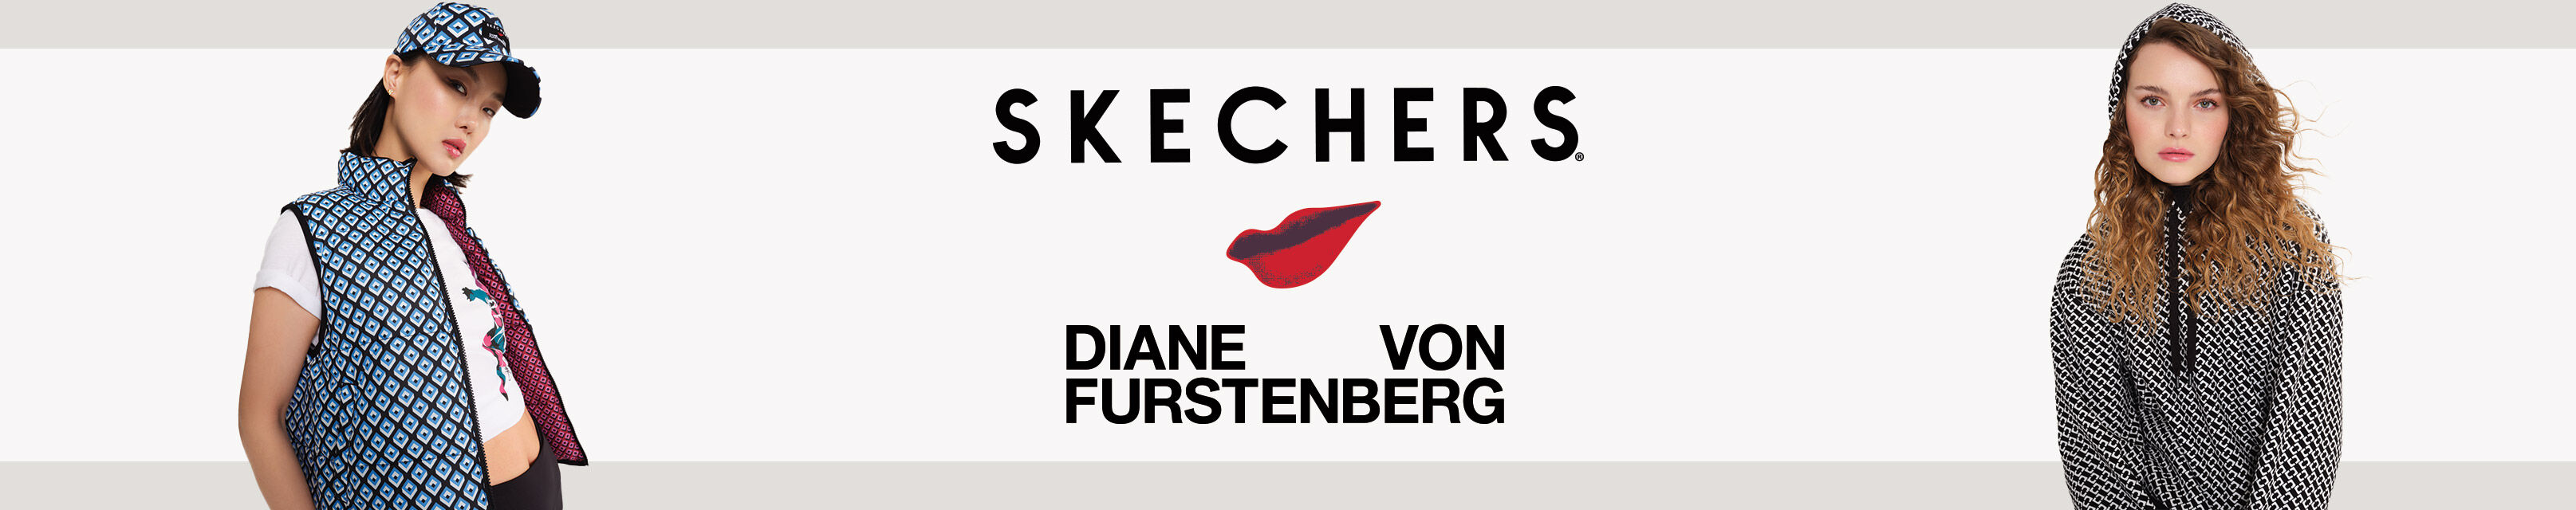 スケッチャーズ x ダイアン・フォン・ファステンバーグ | SKECHERS